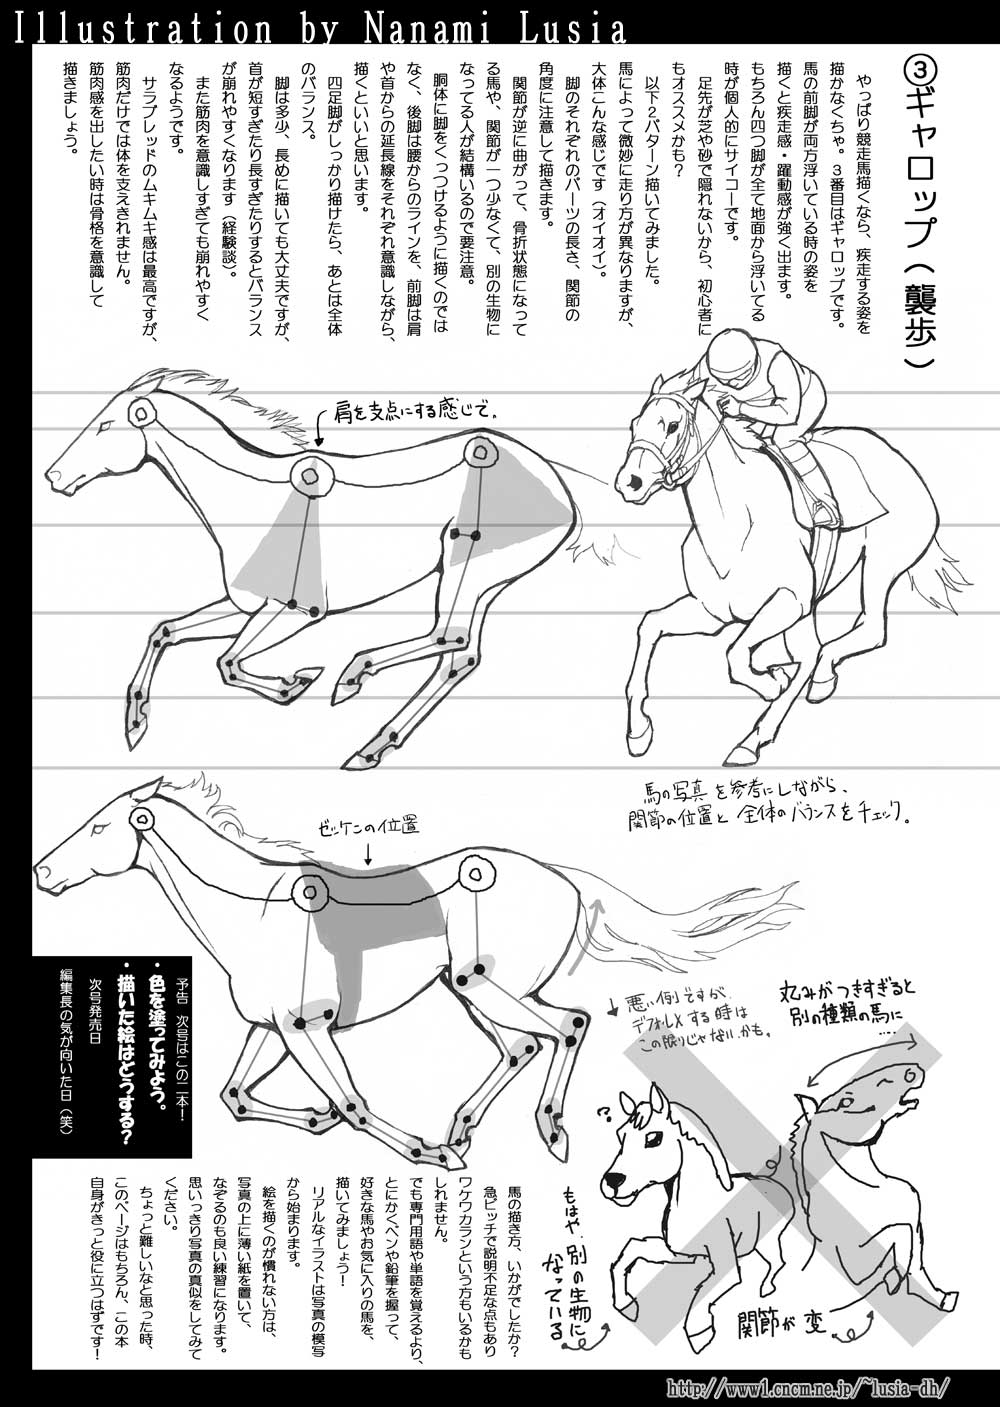 馬のイラスト 馬の描き方 簡易版 その１ 七海ルシアのイラストギャラリー